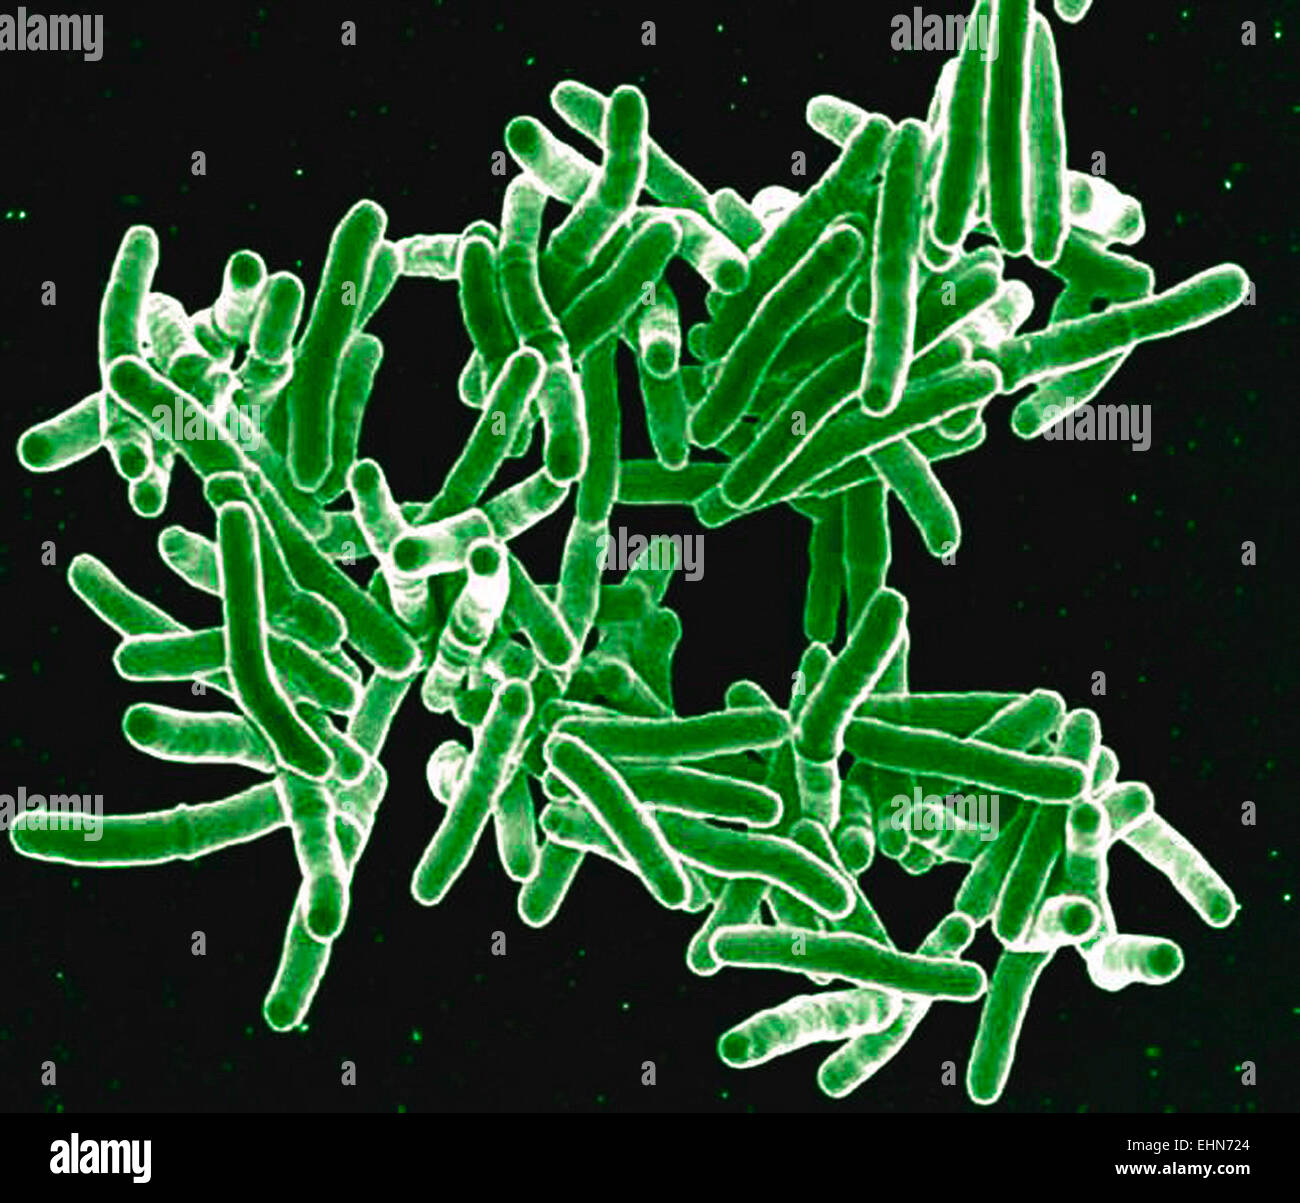 Mycobacterium-Tuberkulose-Bakterien, diese grampositiven stabförmigen Bakterien Ursache der Krankheit Tuberkulose, eingefärbte scanning Electron Schliffbild (SEM). Stockfoto